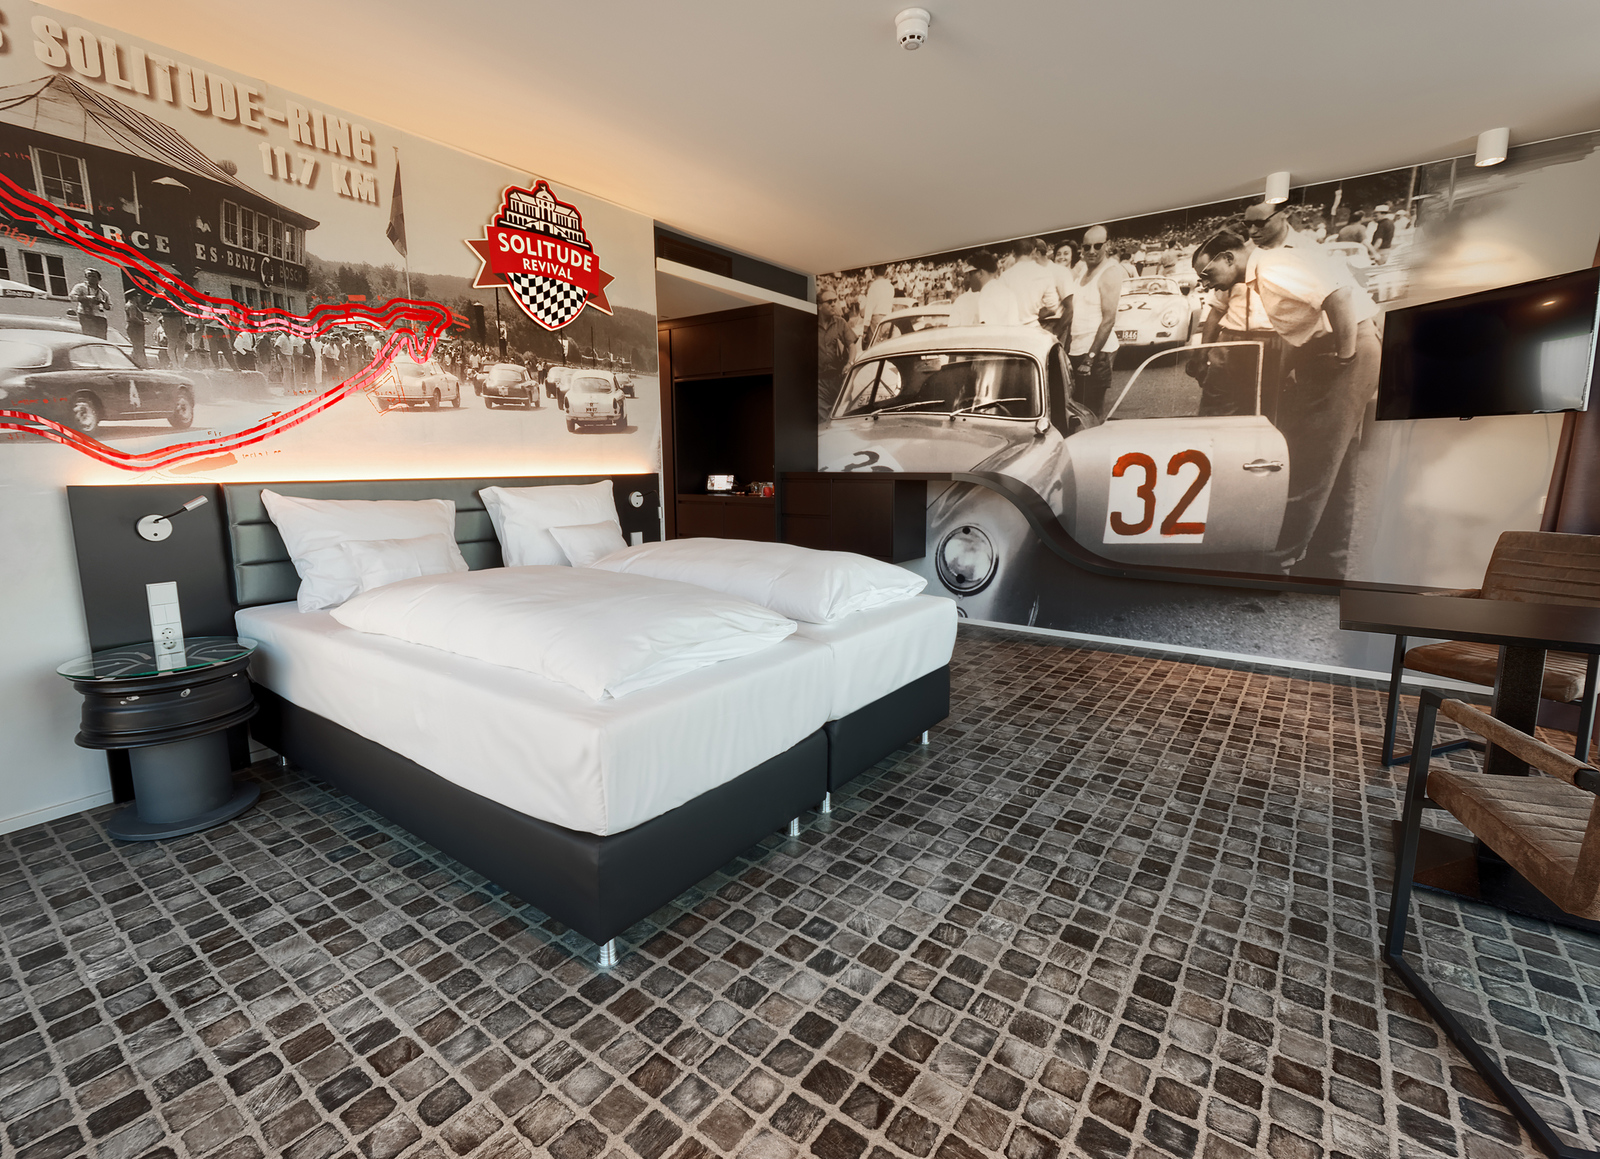 Großzügiges Solitude-Ring-Themenzimmer im V8 Hotel, dekoriert mit schwarz-weiß Motivtapeten, die die Oldtimer beim Rennen zeigen